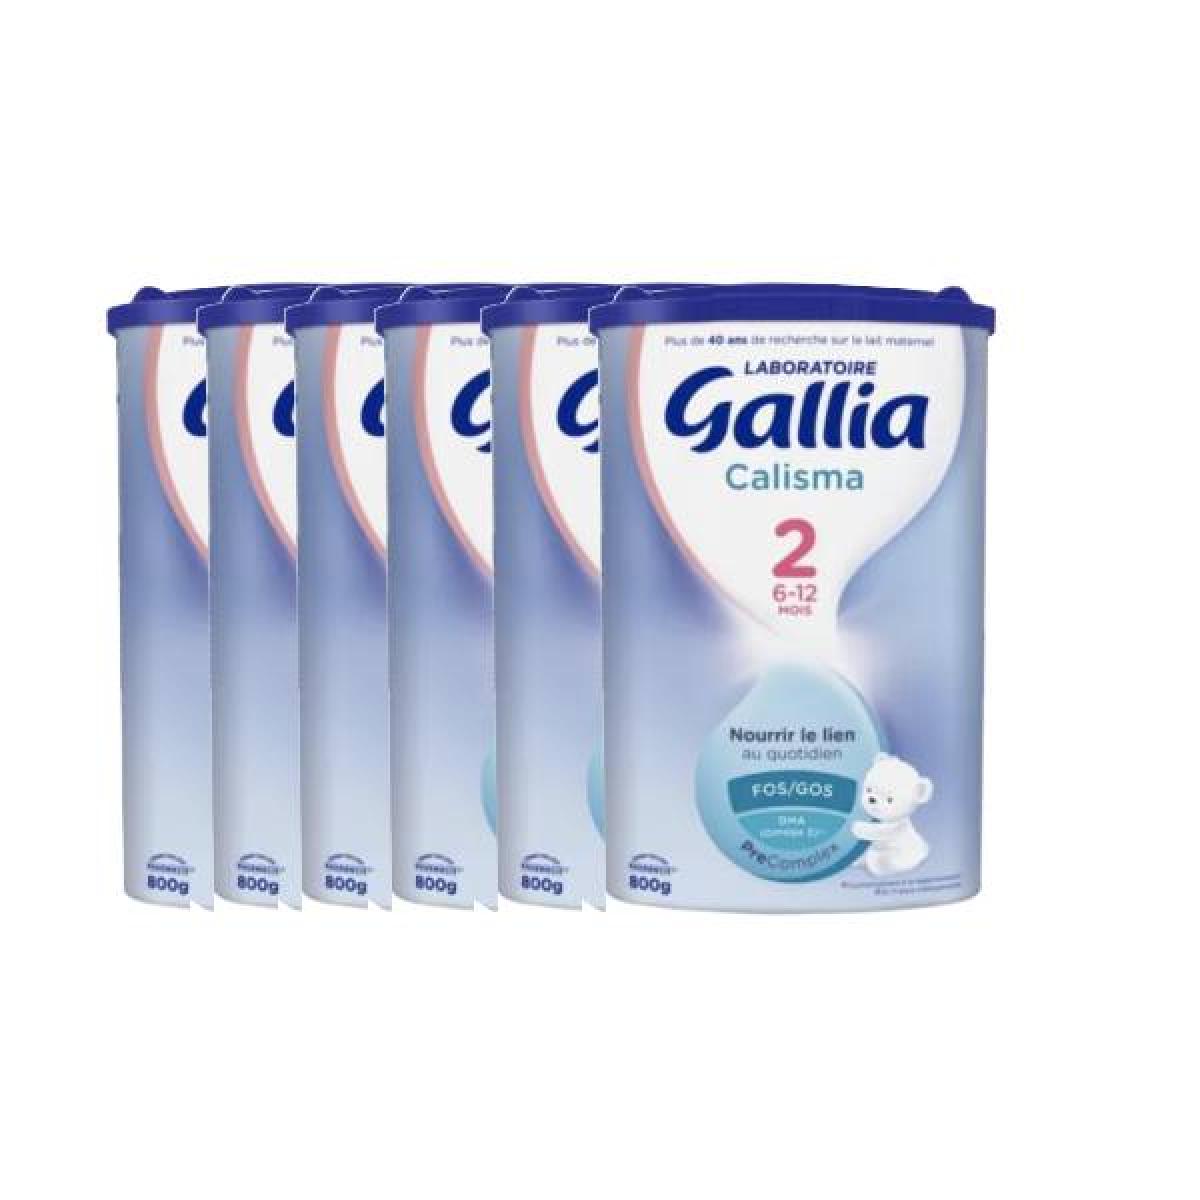 Gallia calisma relais 2 6-12 mois 800g